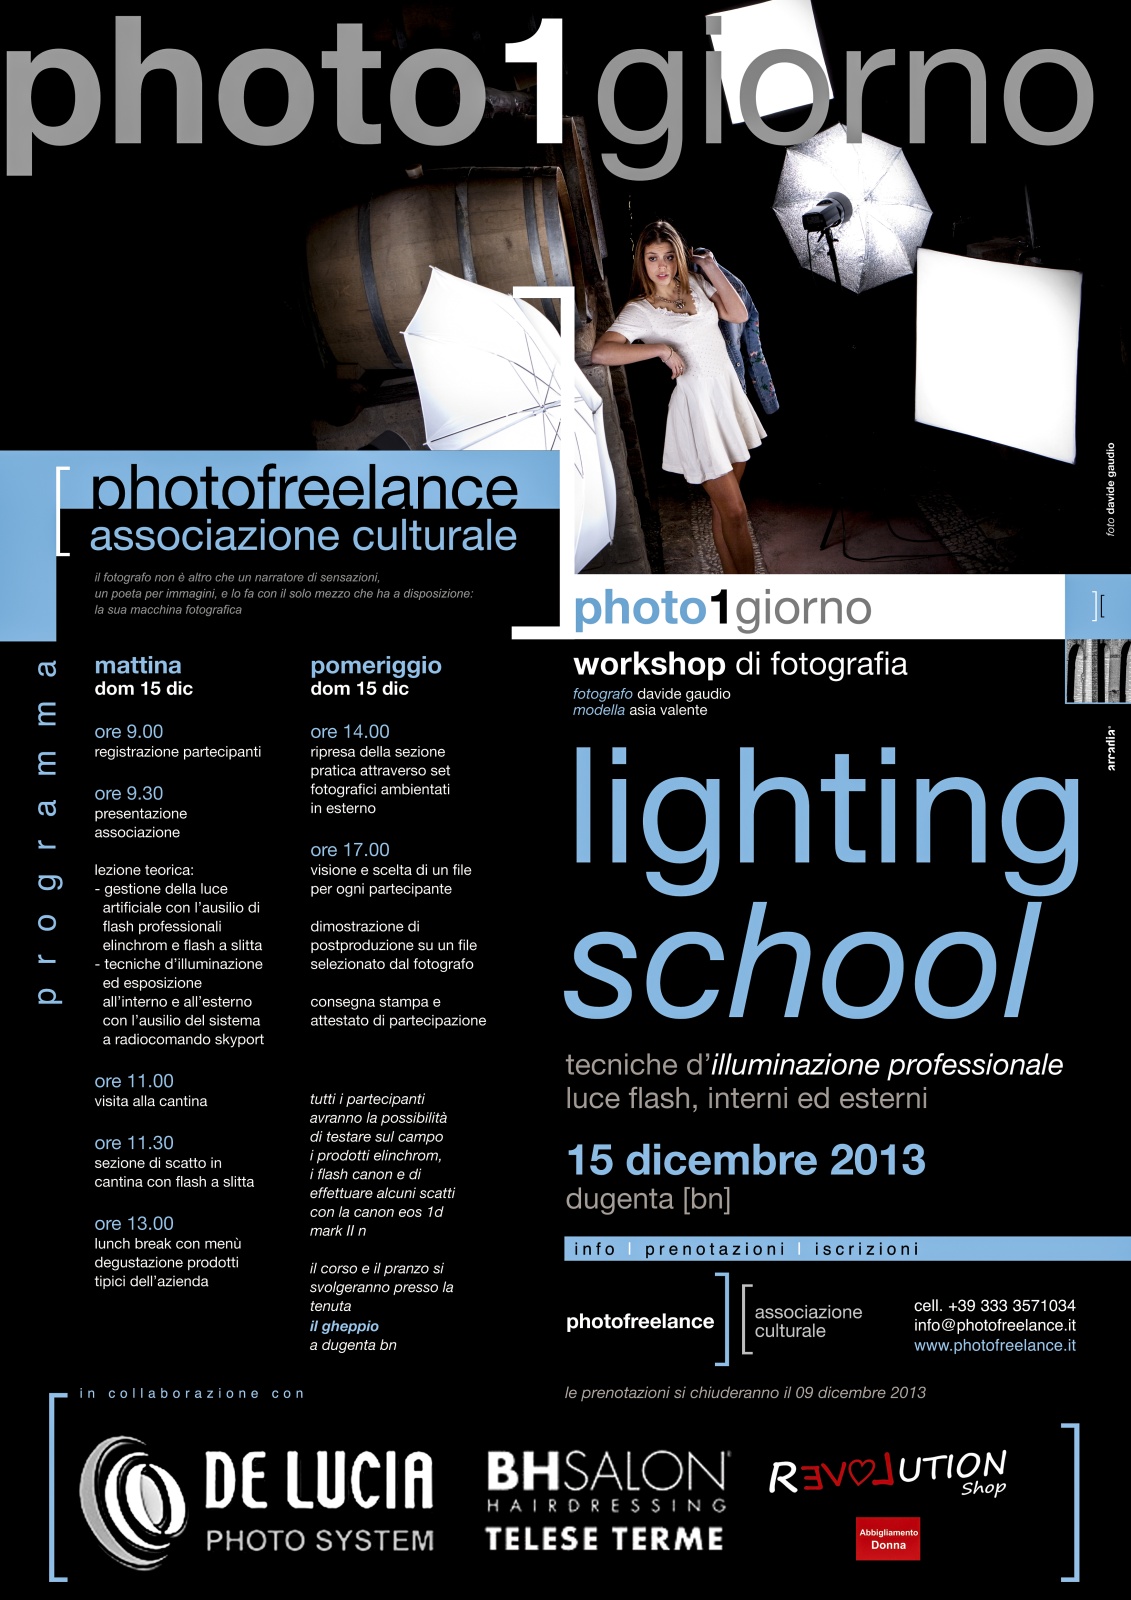 lighting school | 2013